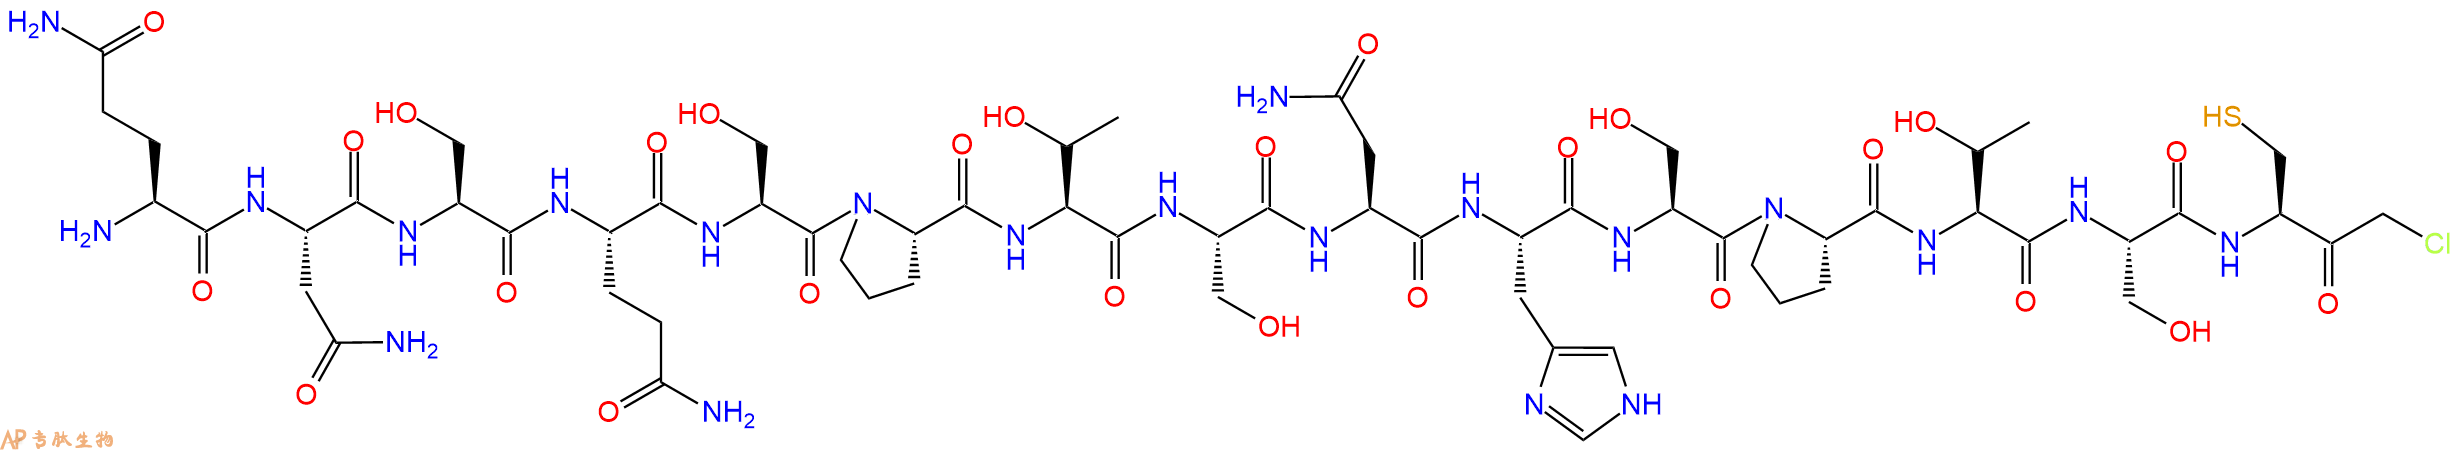 专肽生物产品H2N-Gln-Asn-Ser-Gln-Ser-Pro-Thr-Ser-Asn-His-Ser-Pr